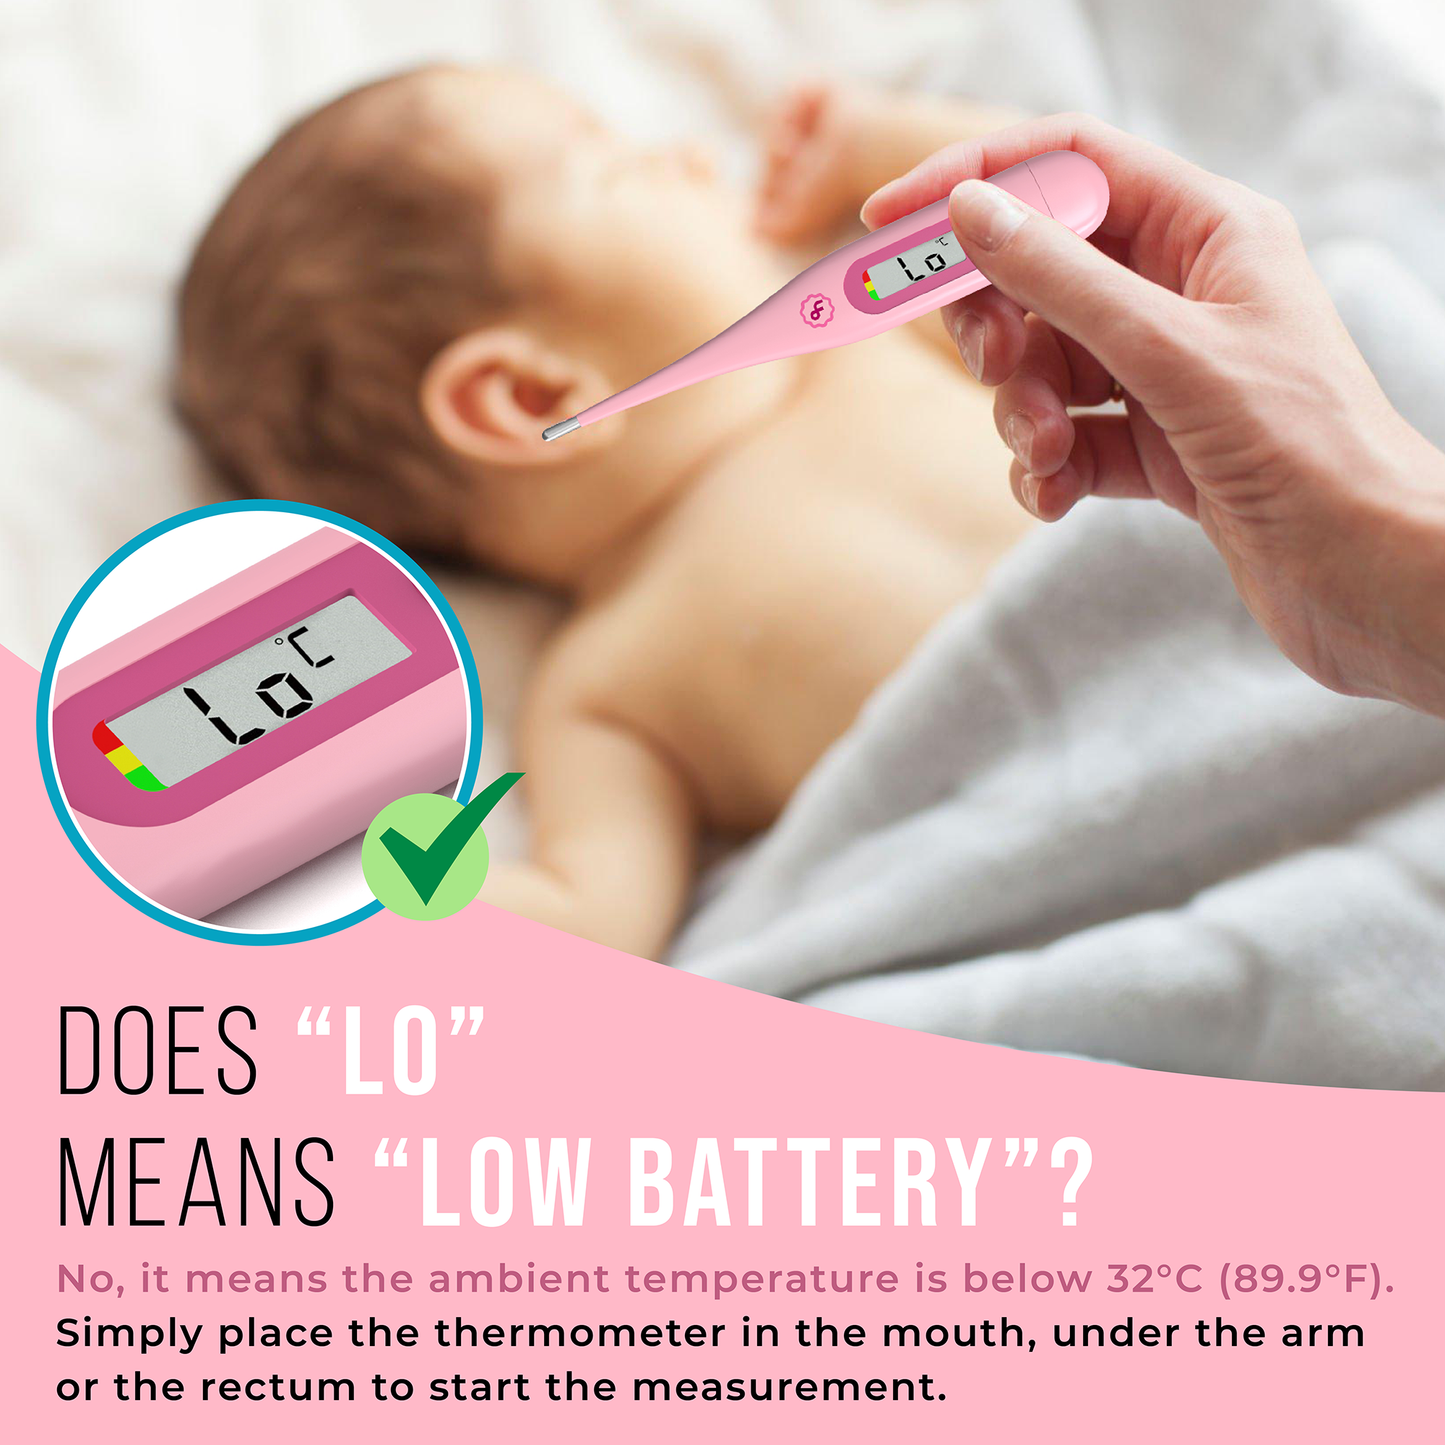 ByFloProducts Thermomètre numérique – Thermomètre oral, rectal et aisselles (DMT-4132 Rose)